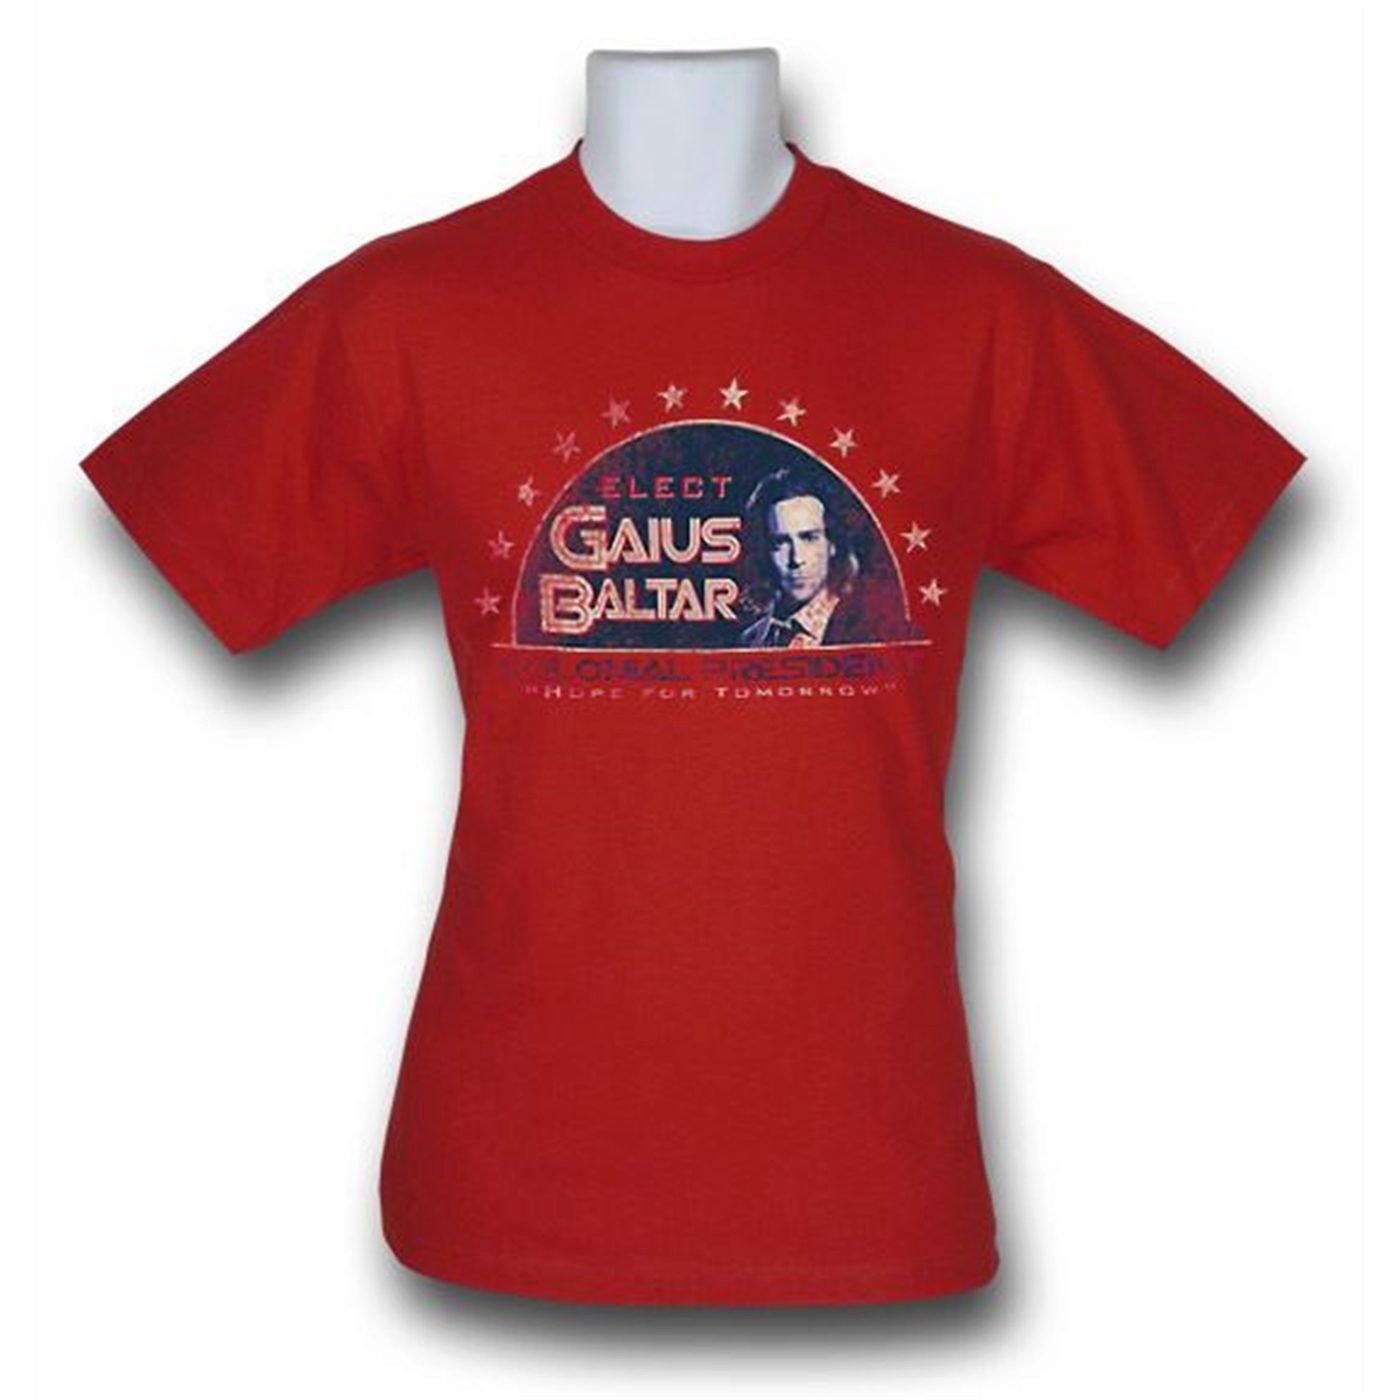 Battlestar Galactica Elect Baltar T-Shirt